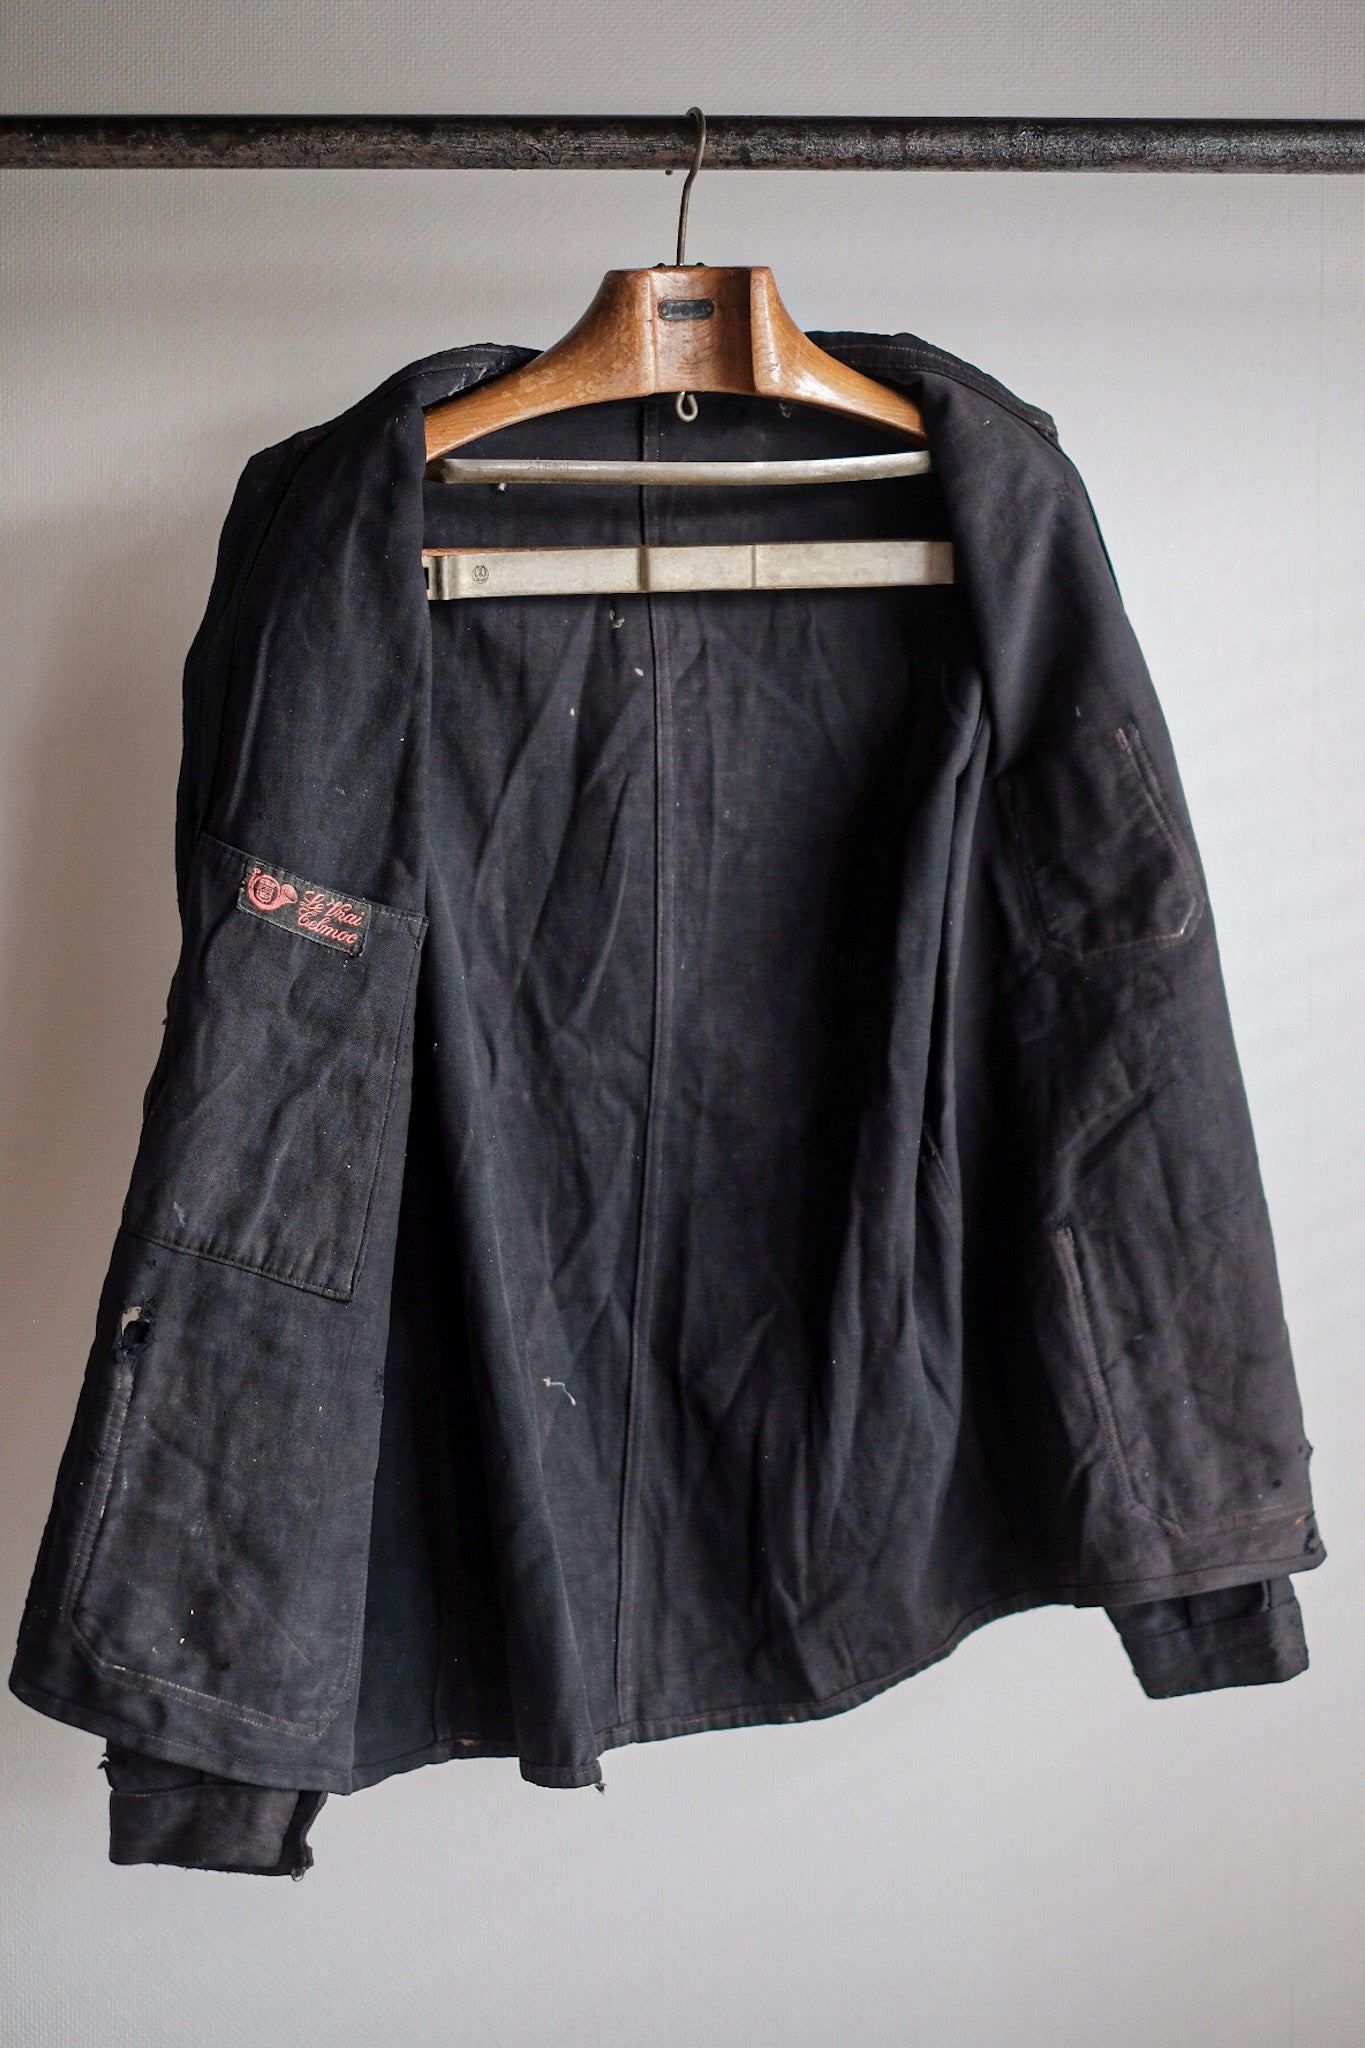 [~ 20 '] 프랑스 빈티지 블랙 몰스 피부 작업 재킷 "6 버튼"